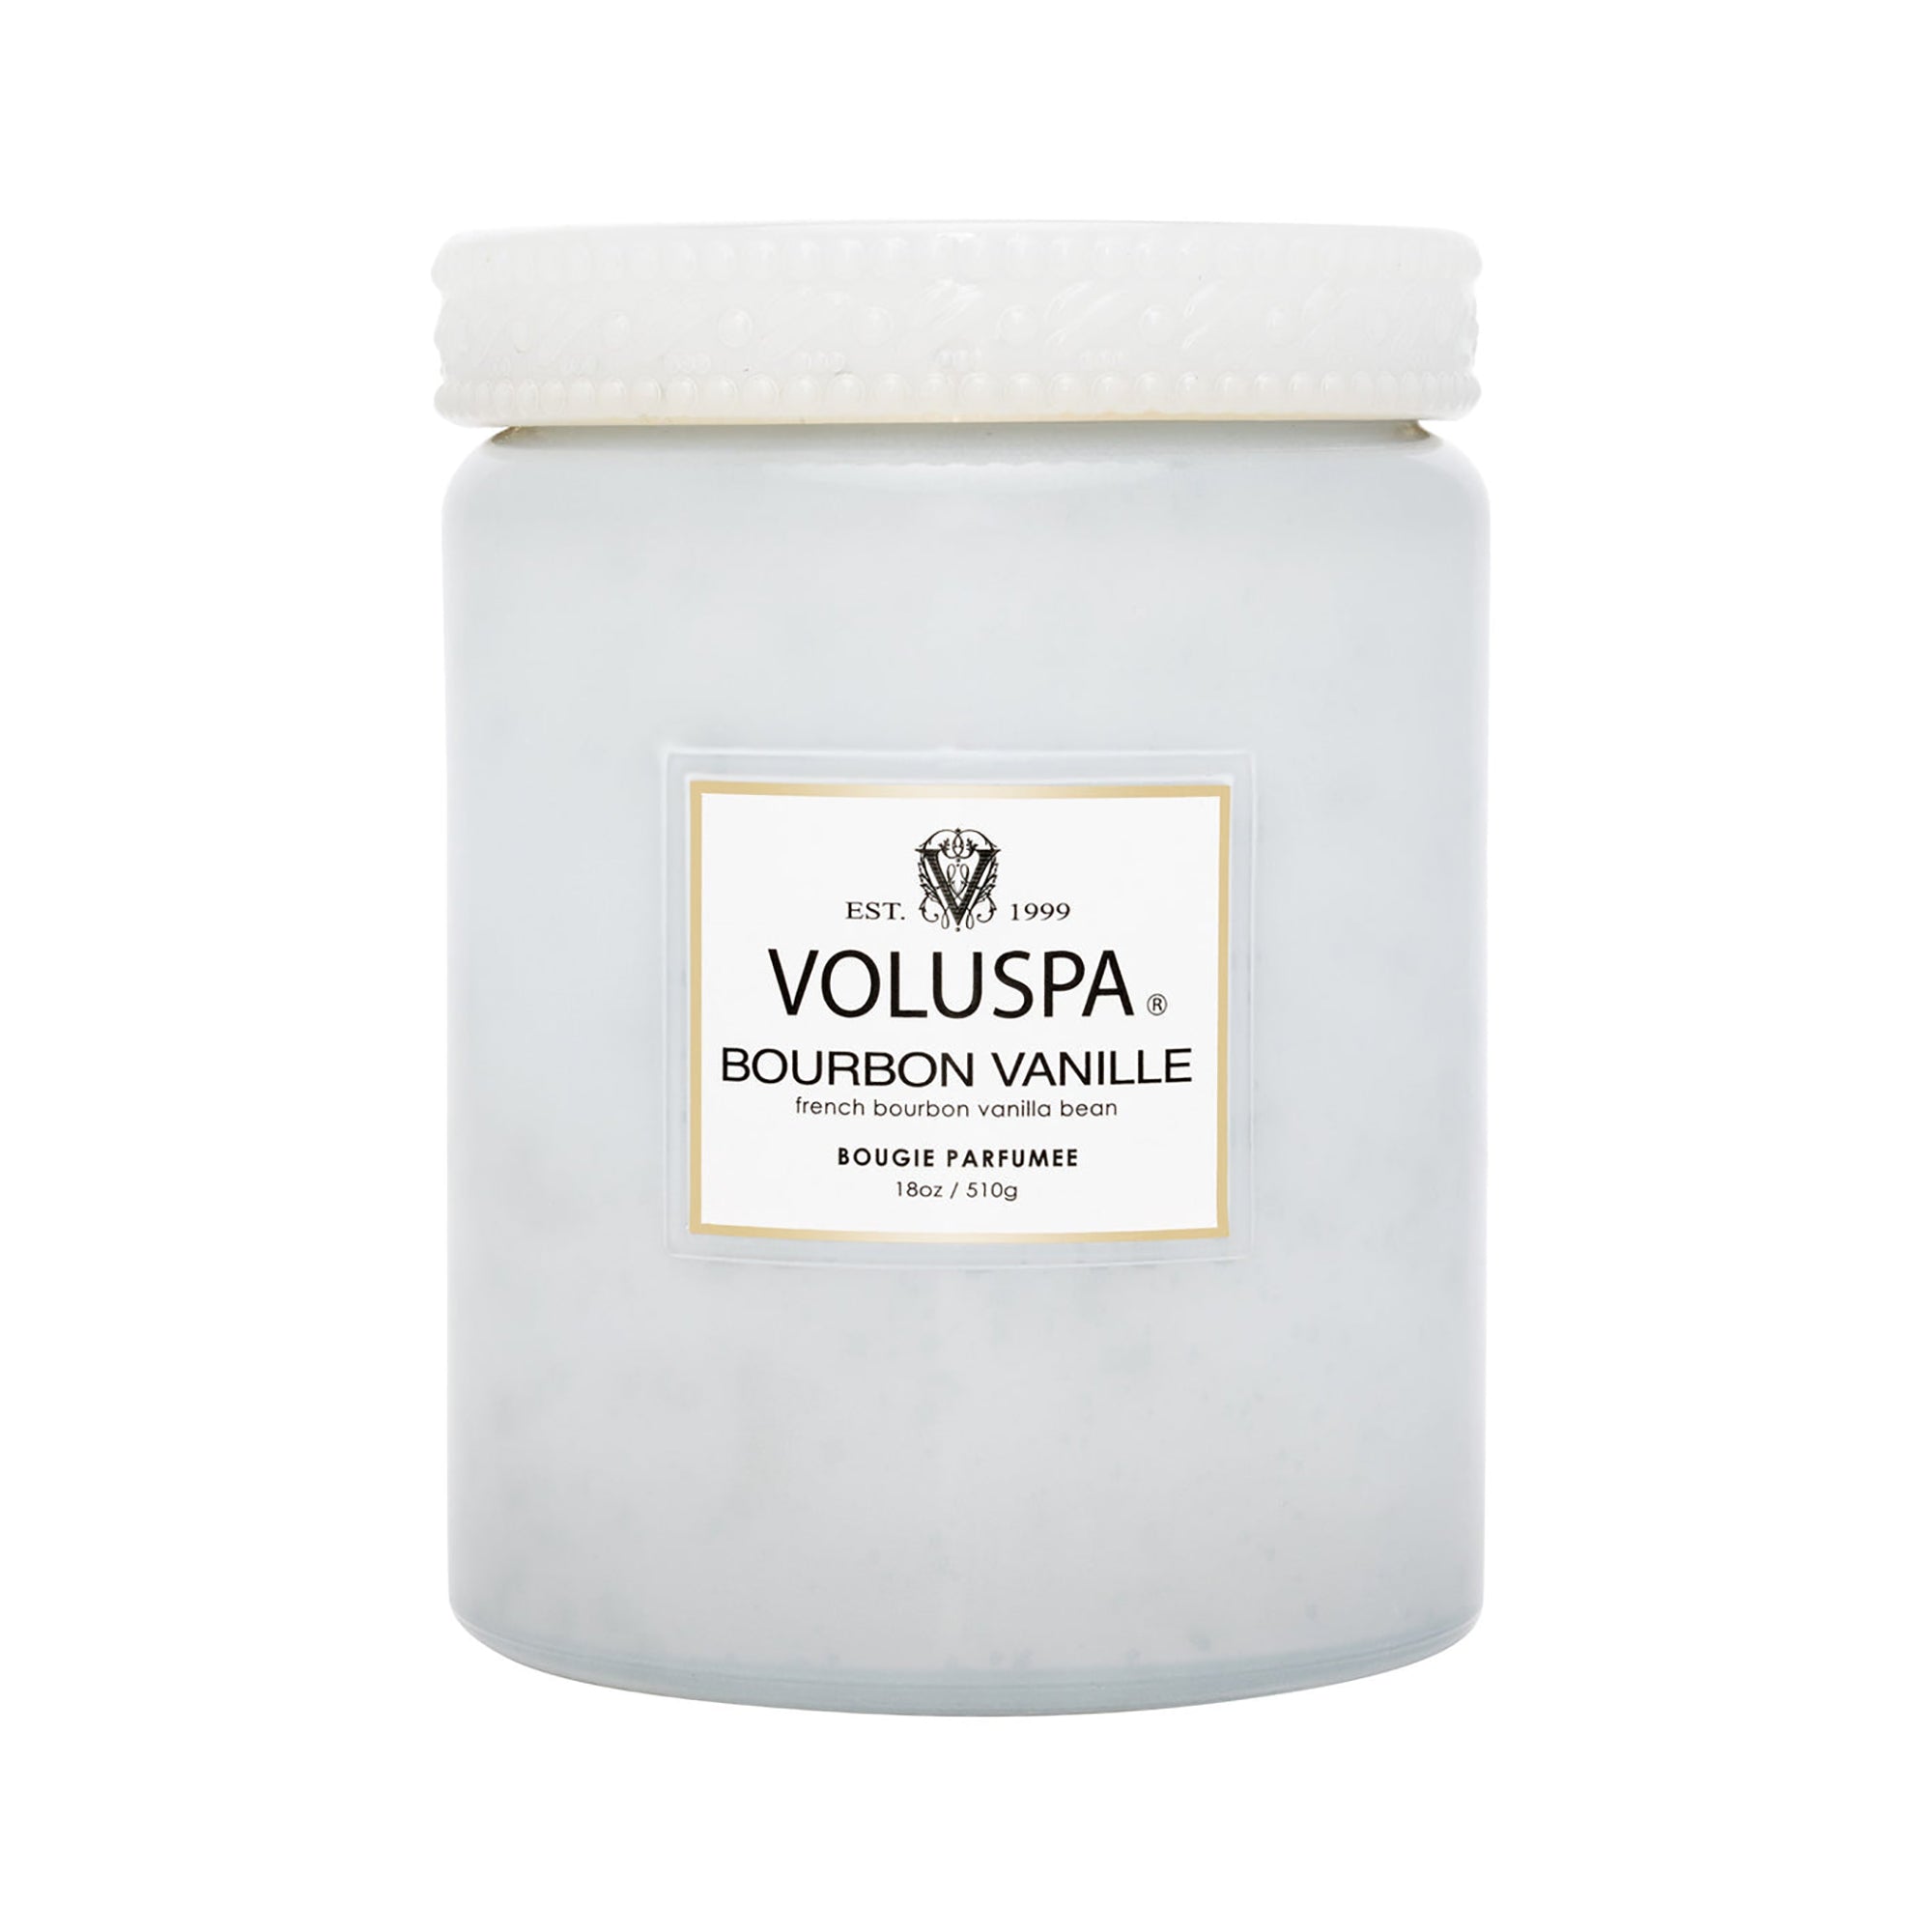 Voluspa Vermeil Large Jar Candle 18oz / Bourbon Vanille